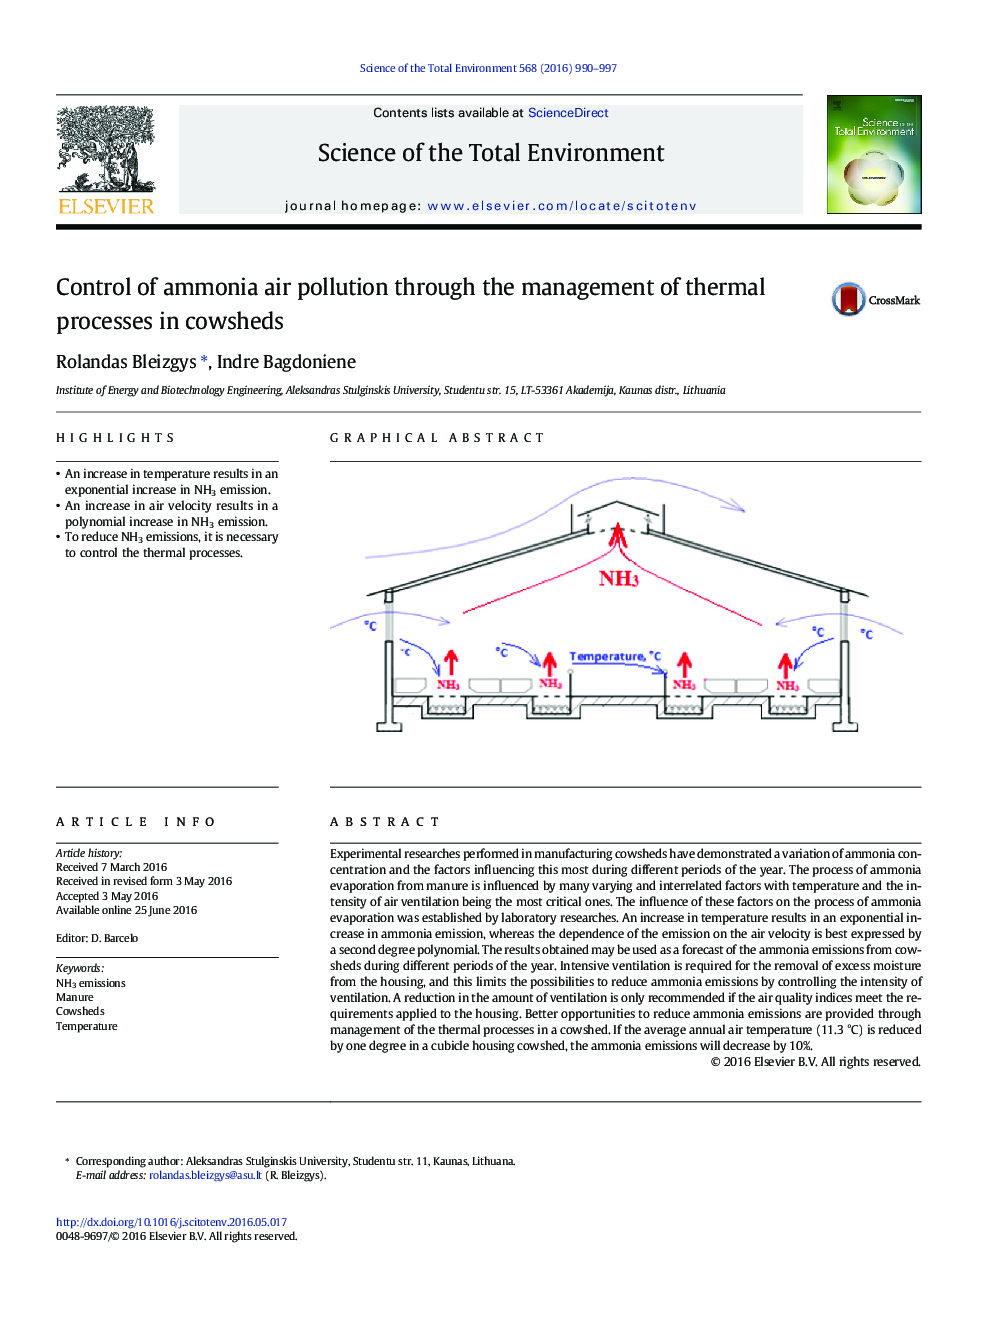 کنترل آلودگی هوا آمونیاک از طریق مدیریت فرآیندهای حرارتی در گاوداری ها 